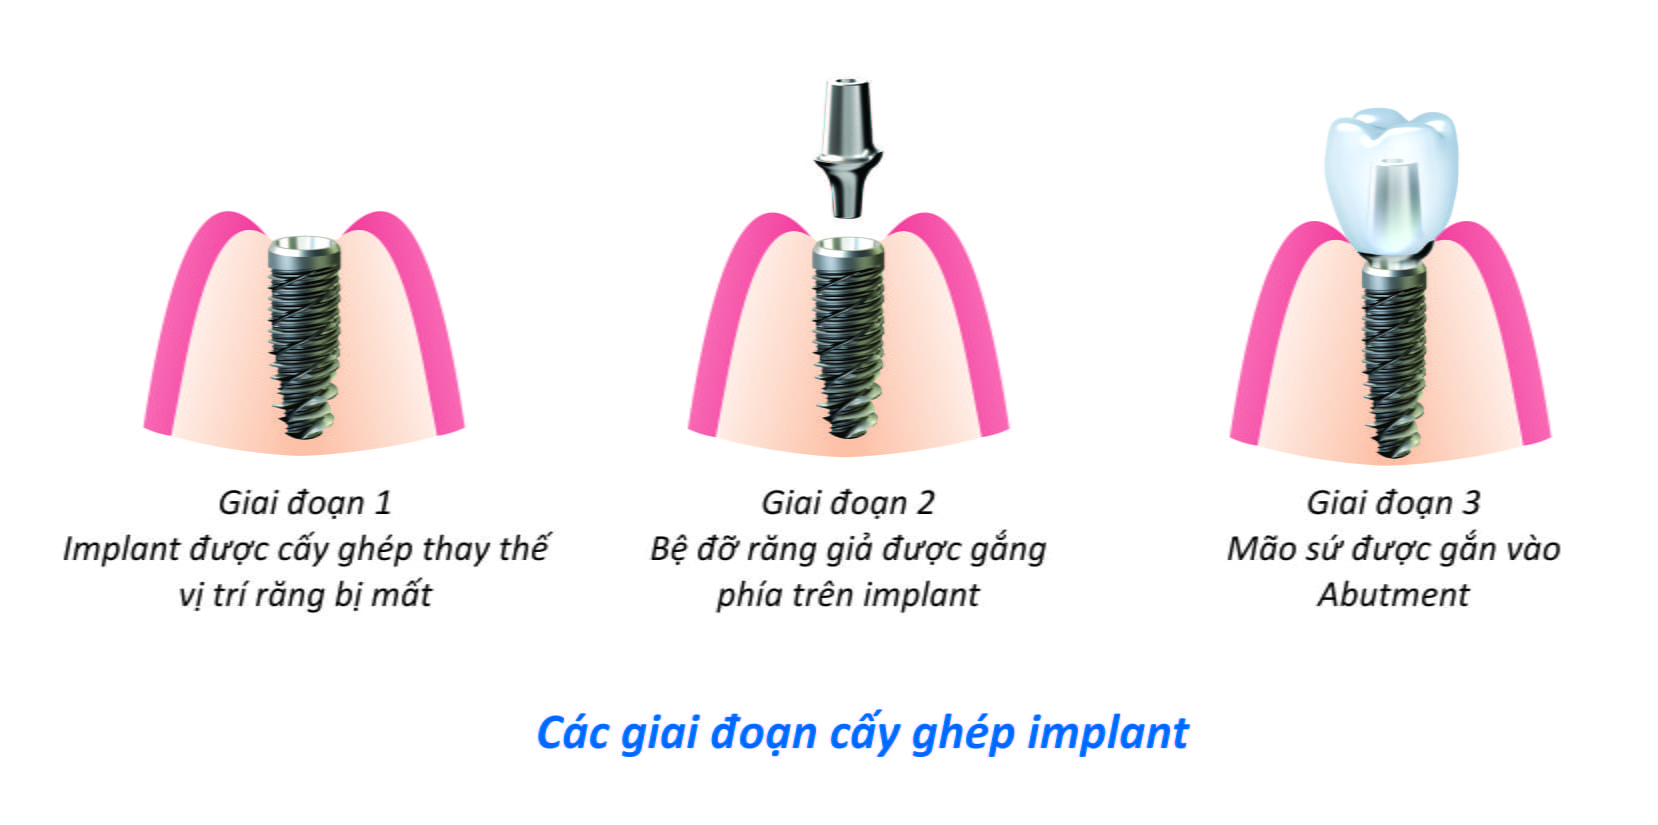 Cấy ghép Implant có những ưu điểm gì ?